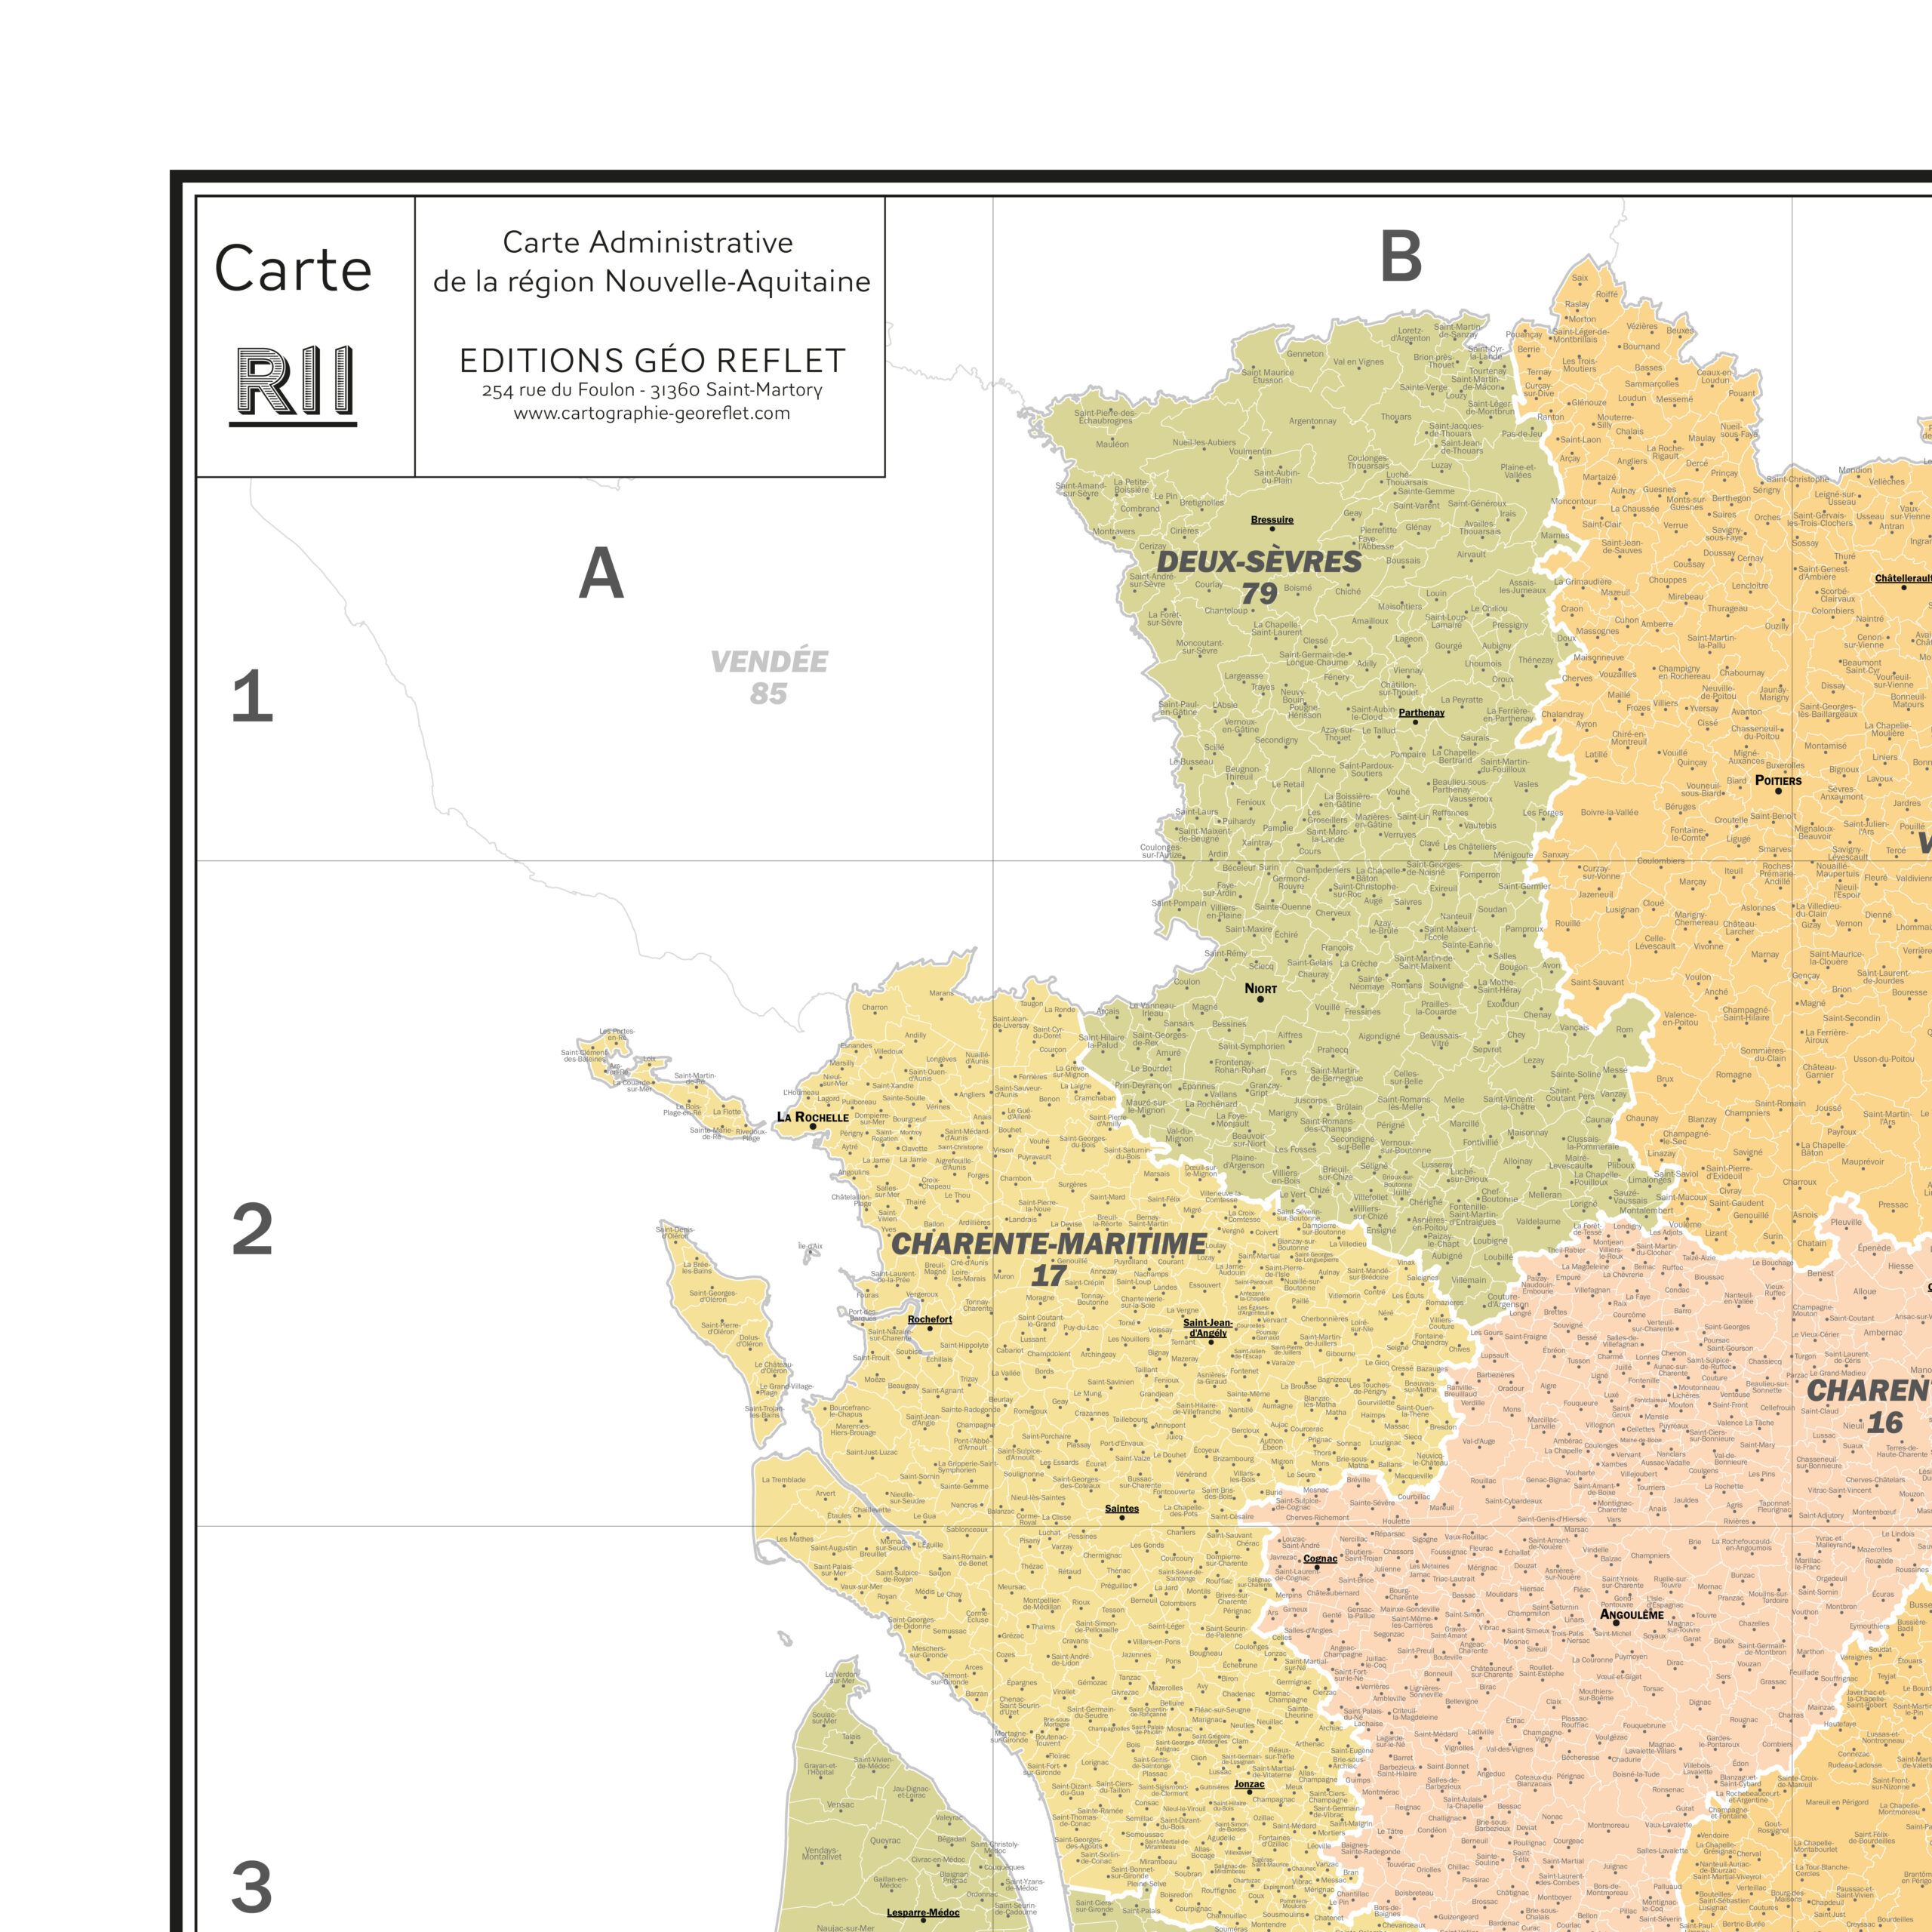 Extrait cartographique de la carte administrative de la Région Nouvelle-Aquitaine 120x120cm, extrait centré sur le département de la Charente-Maritime